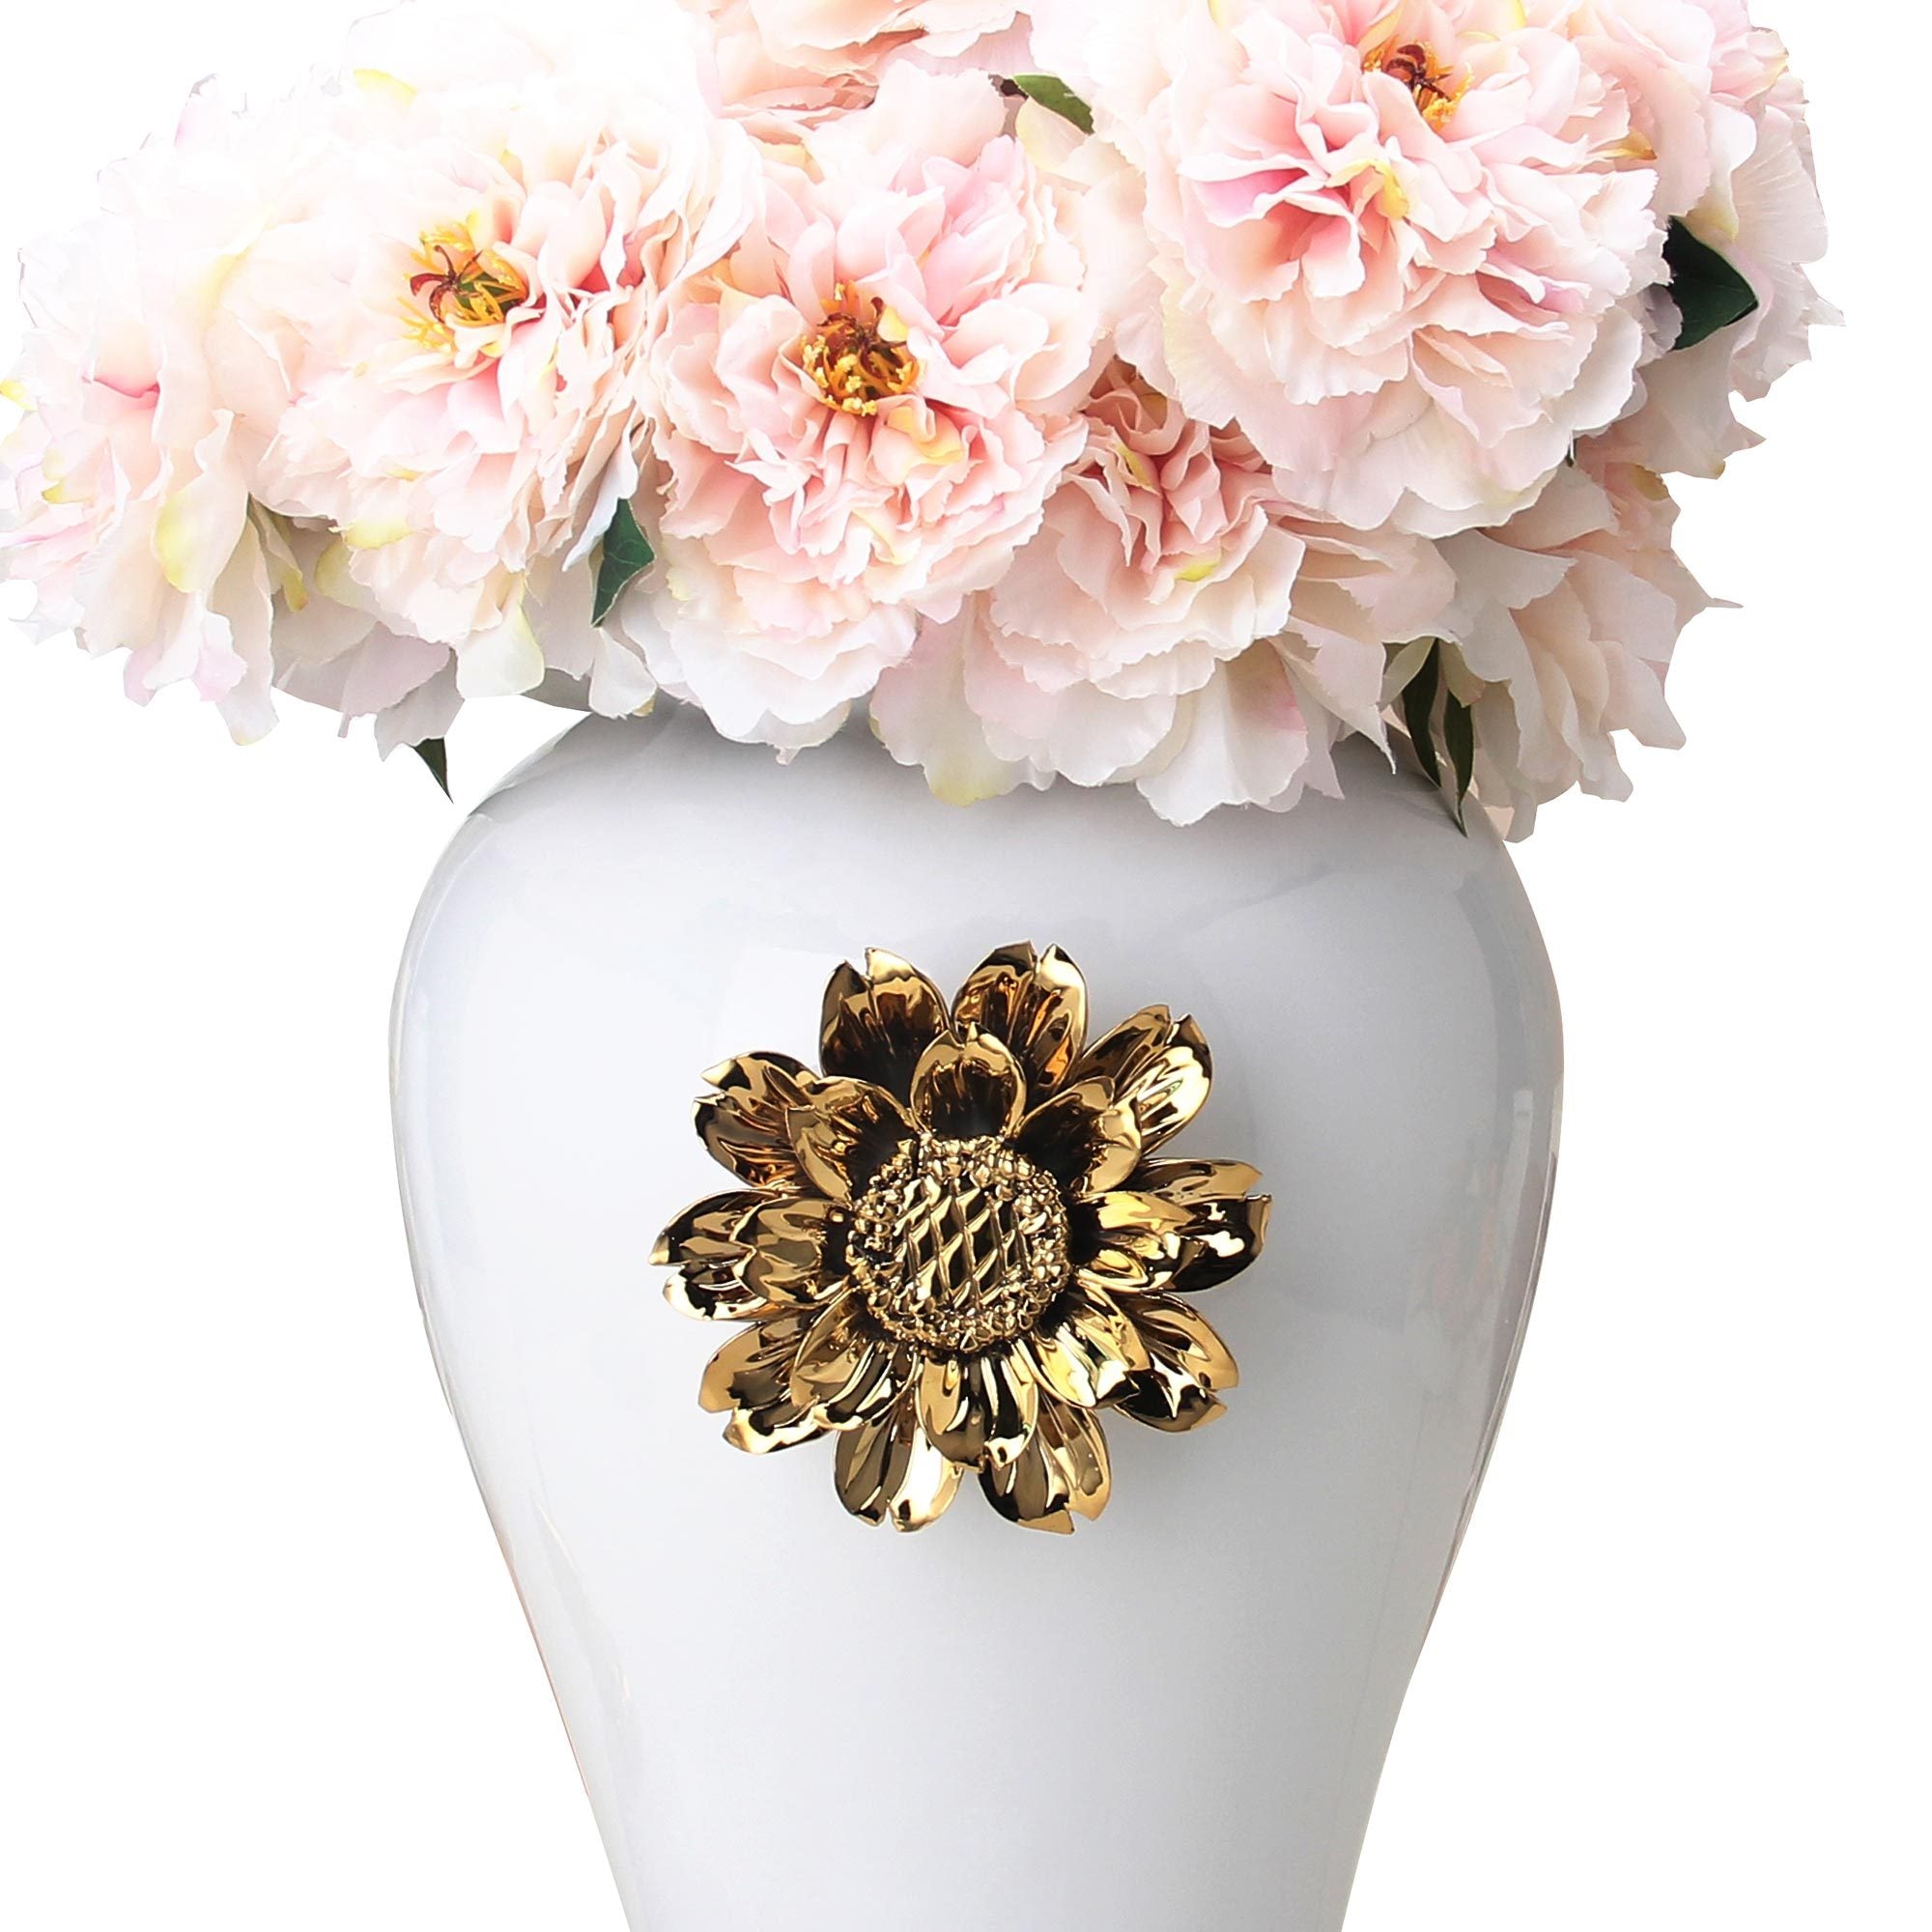 White Ginger Jar with Gilded Flower Timeless Home white-ceramic